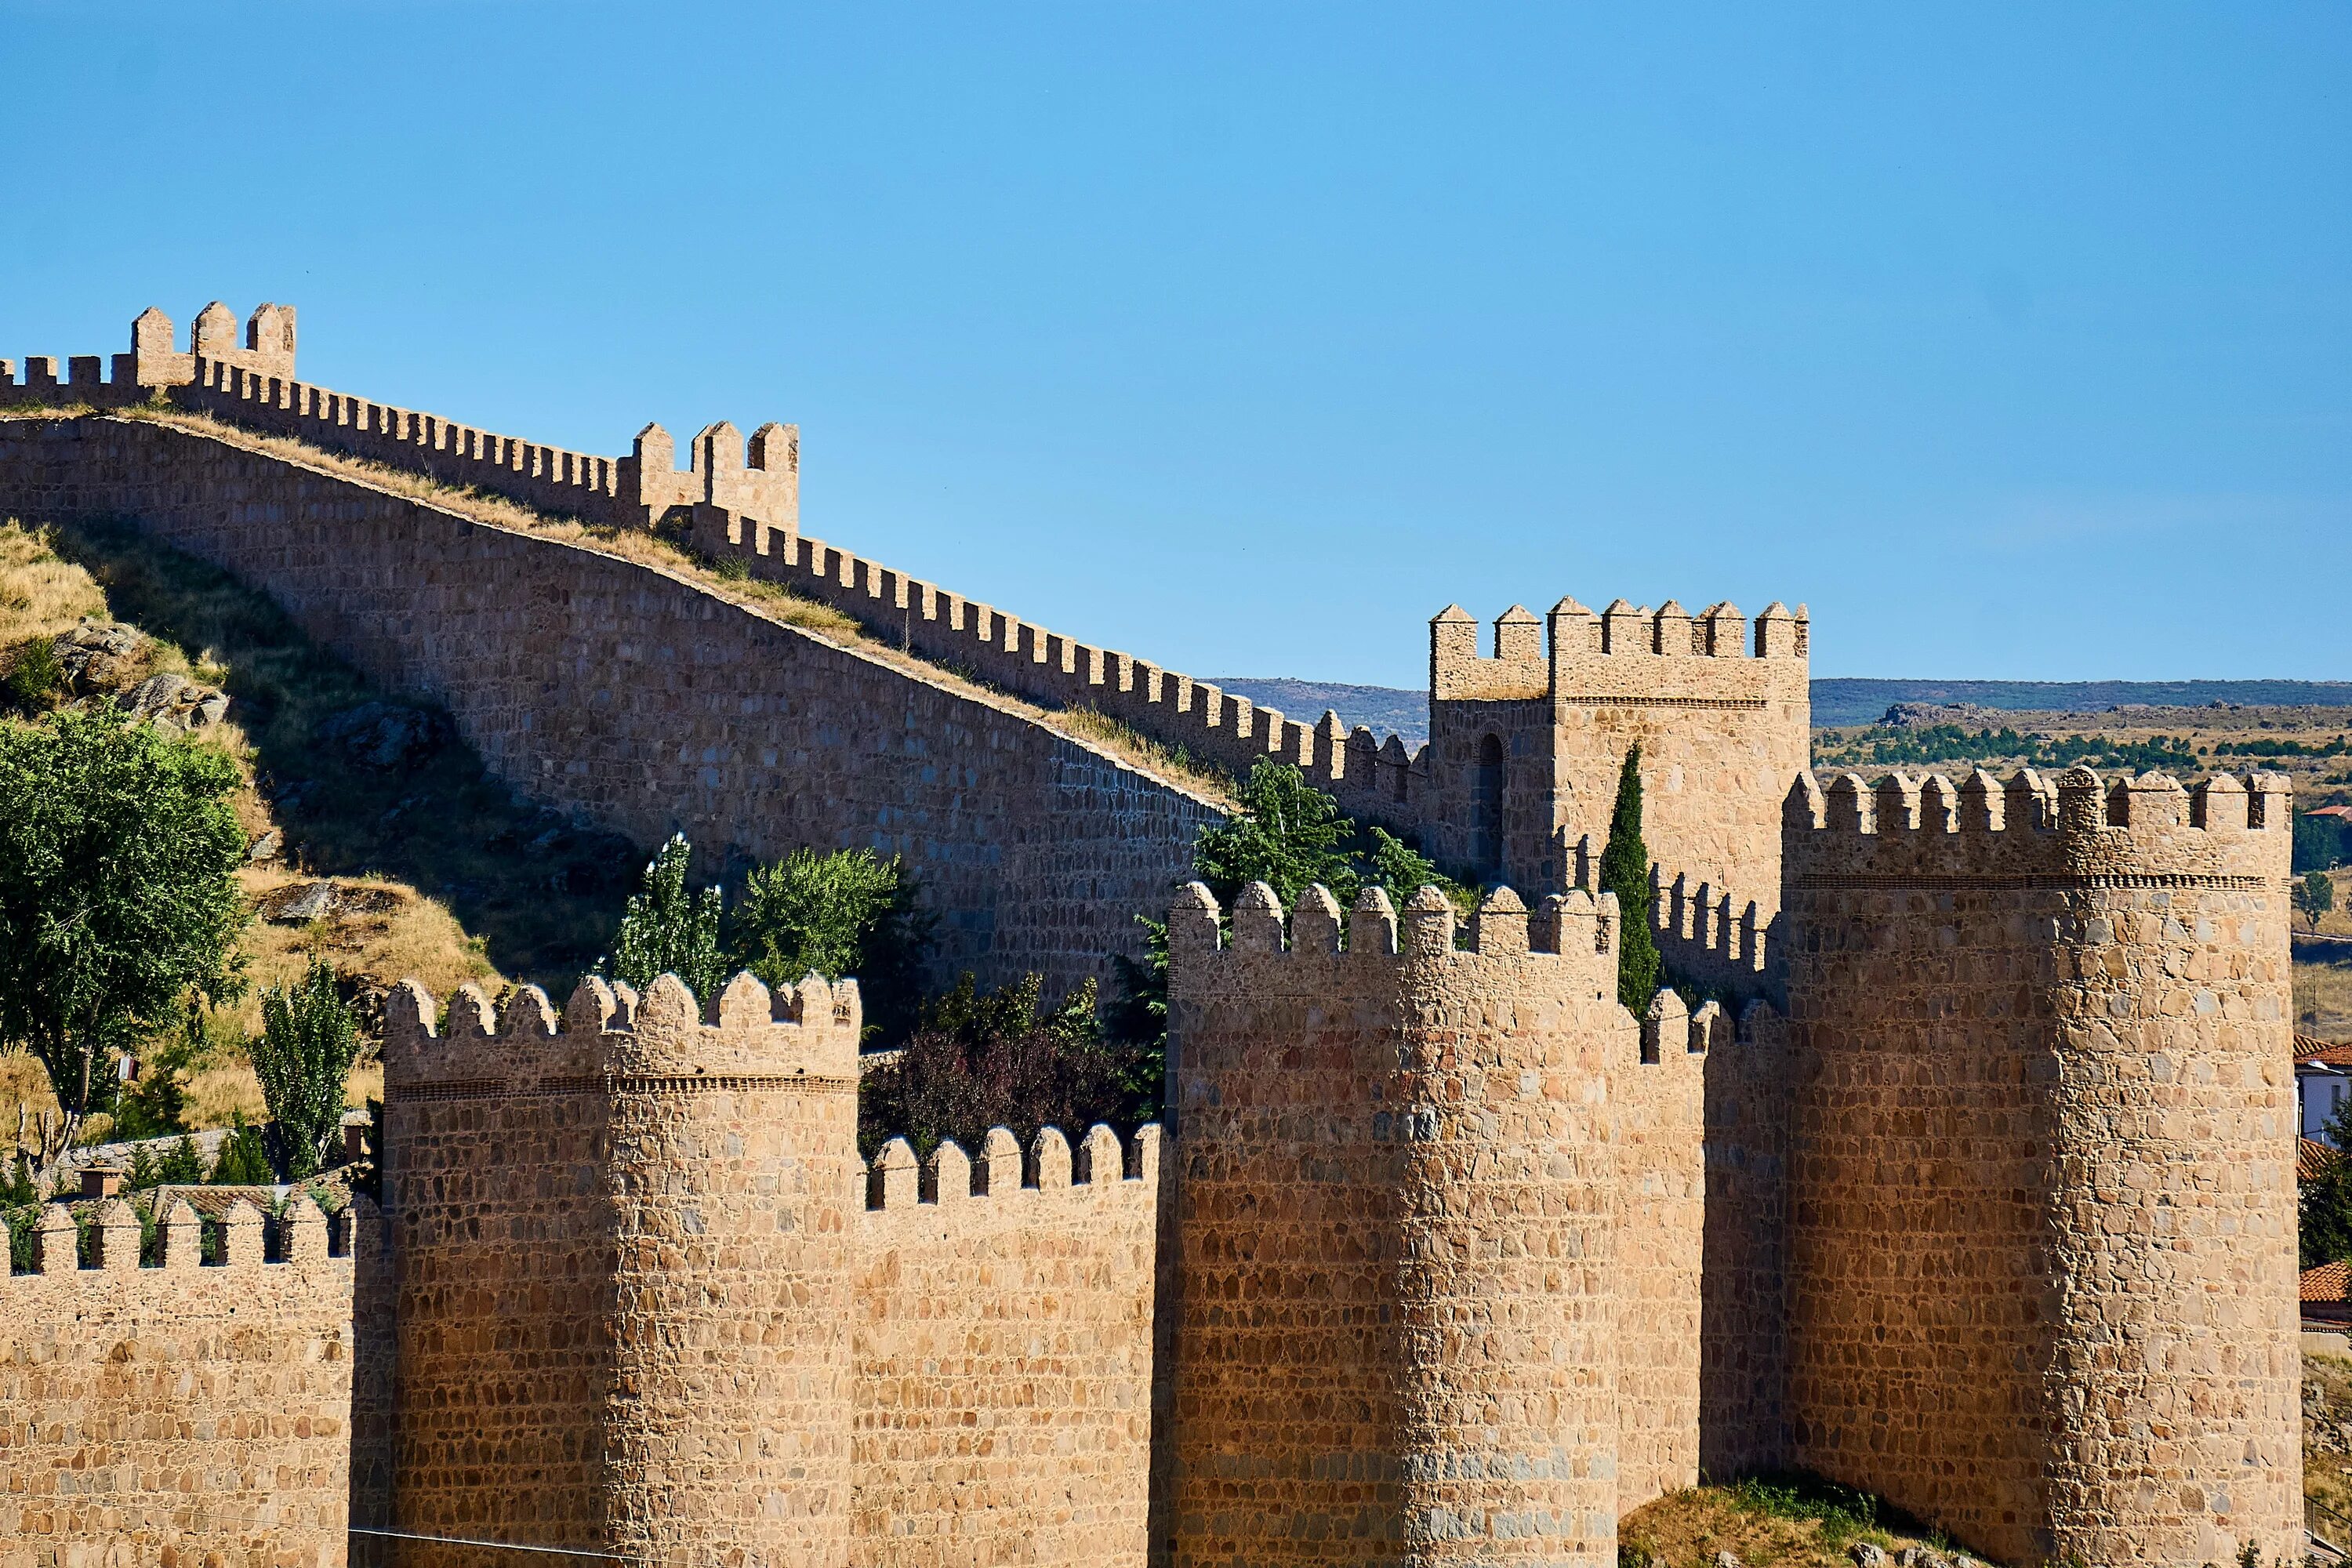 Достопримечательности среднего города. Авила Испания крепость. Замок Авила в Испании. Город крепость Авила в Испании. Стены Авилы (г.Авила), Испания.